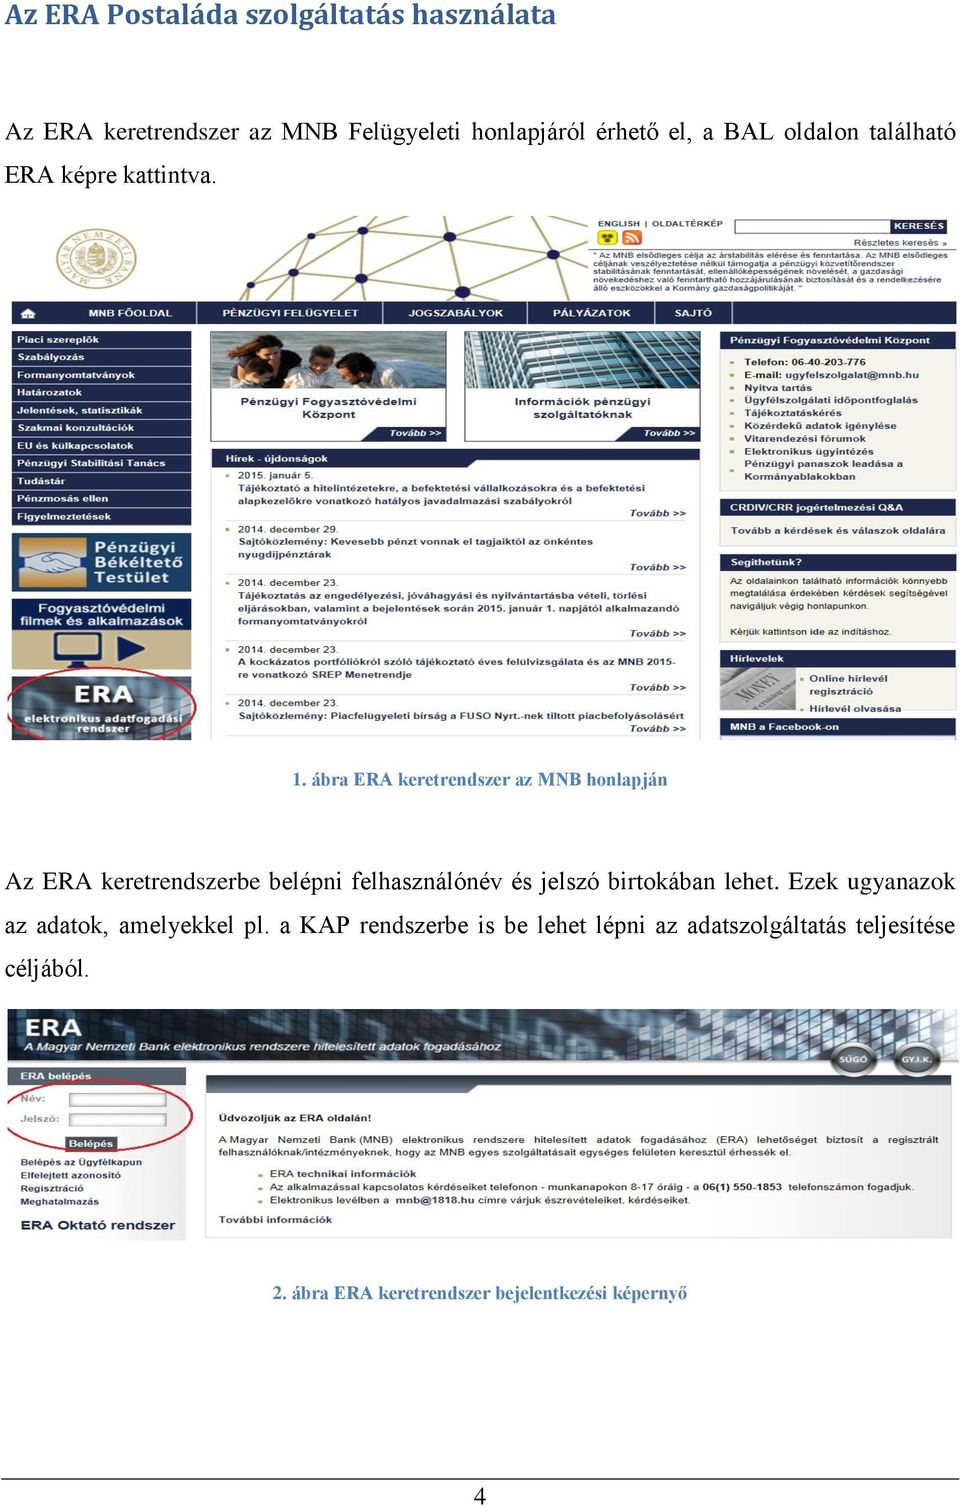 ábra ERA keretrendszer az MNB honlapján Az ERA keretrendszerbe belépni felhasználónév és jelszó birtokában